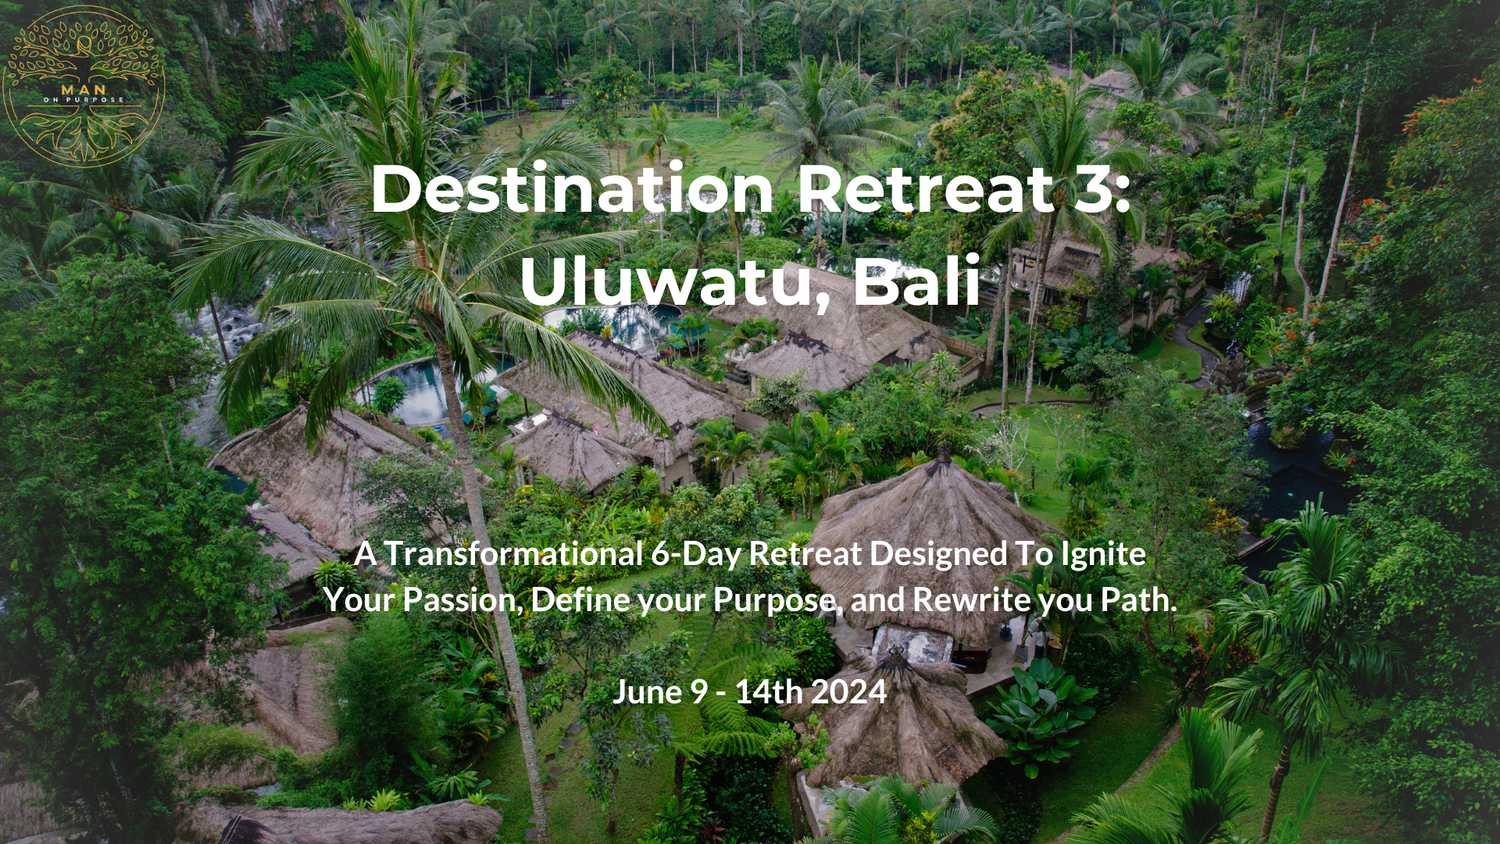 Destination Retreat 3 Uluwatu, Bali.png__PID:8534da1f-033d-42cd-87ab-1b8c3723cdba